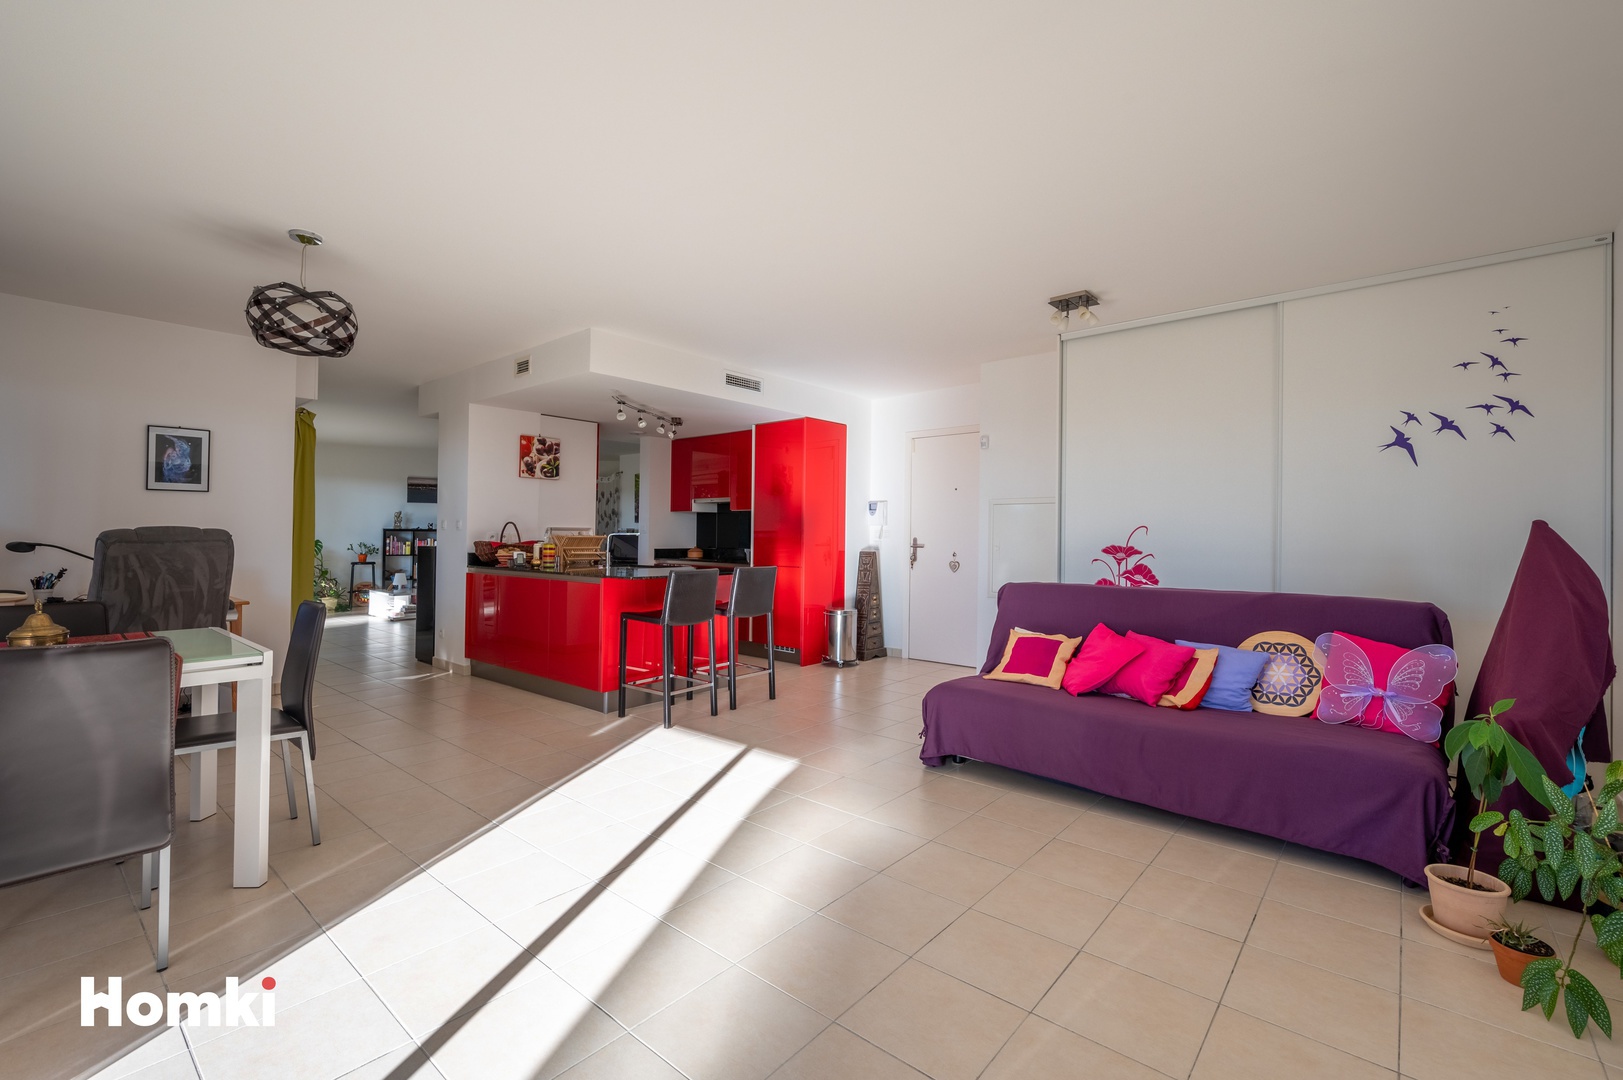 Homki - Vente Appartement  de 99.0 m² à Cannes 06150